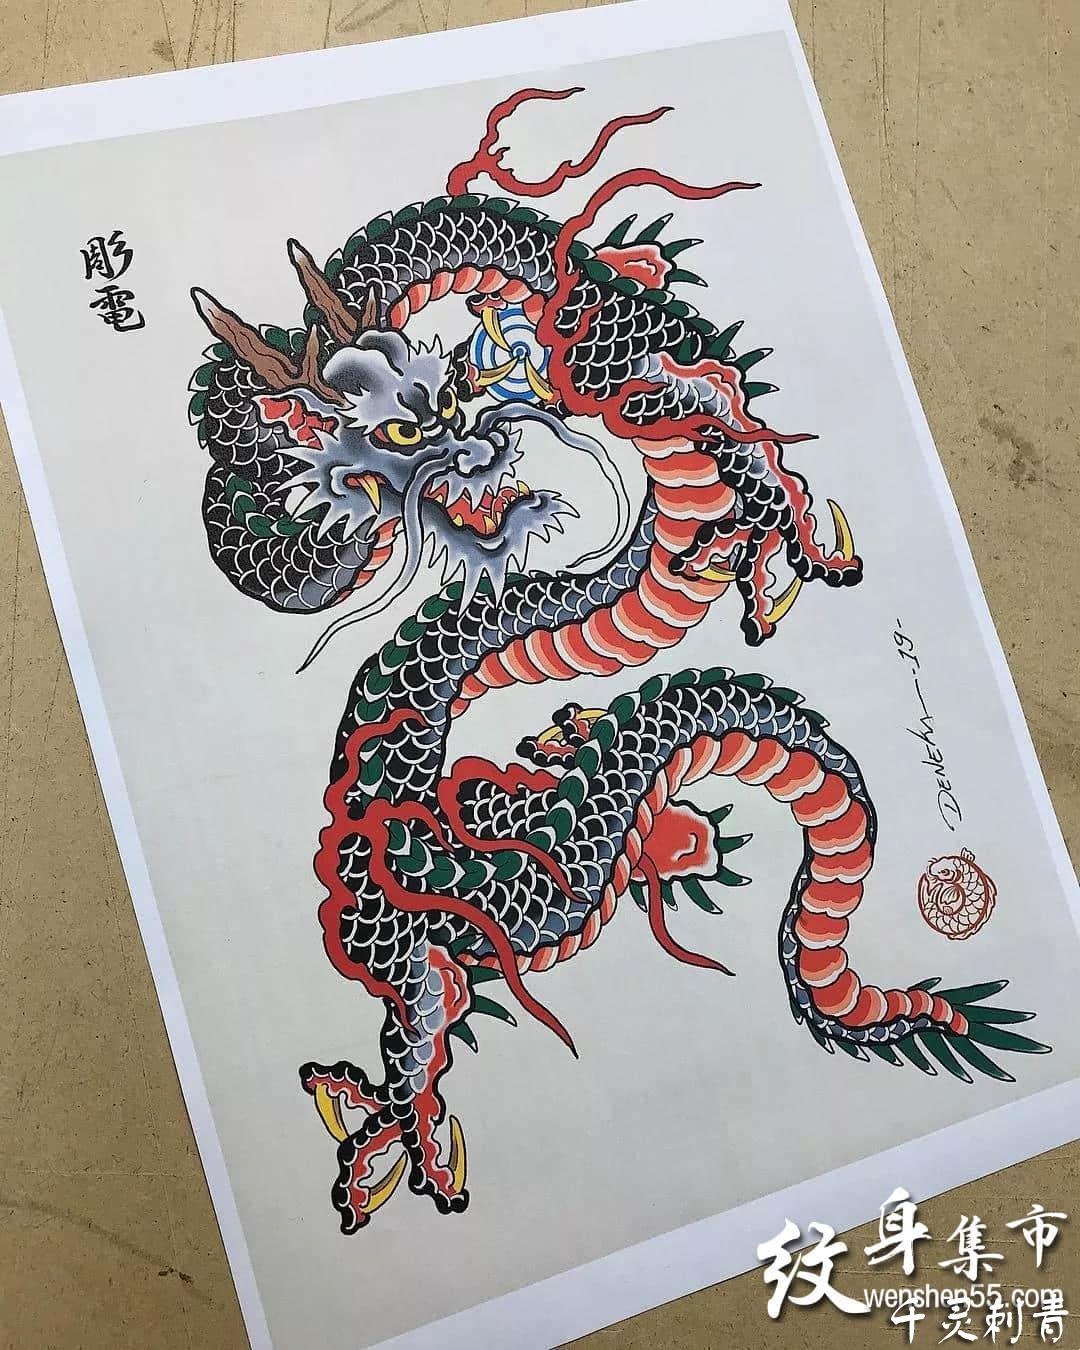 日式龙纹身,日式龙纹身手稿,日式龙纹身手稿图案